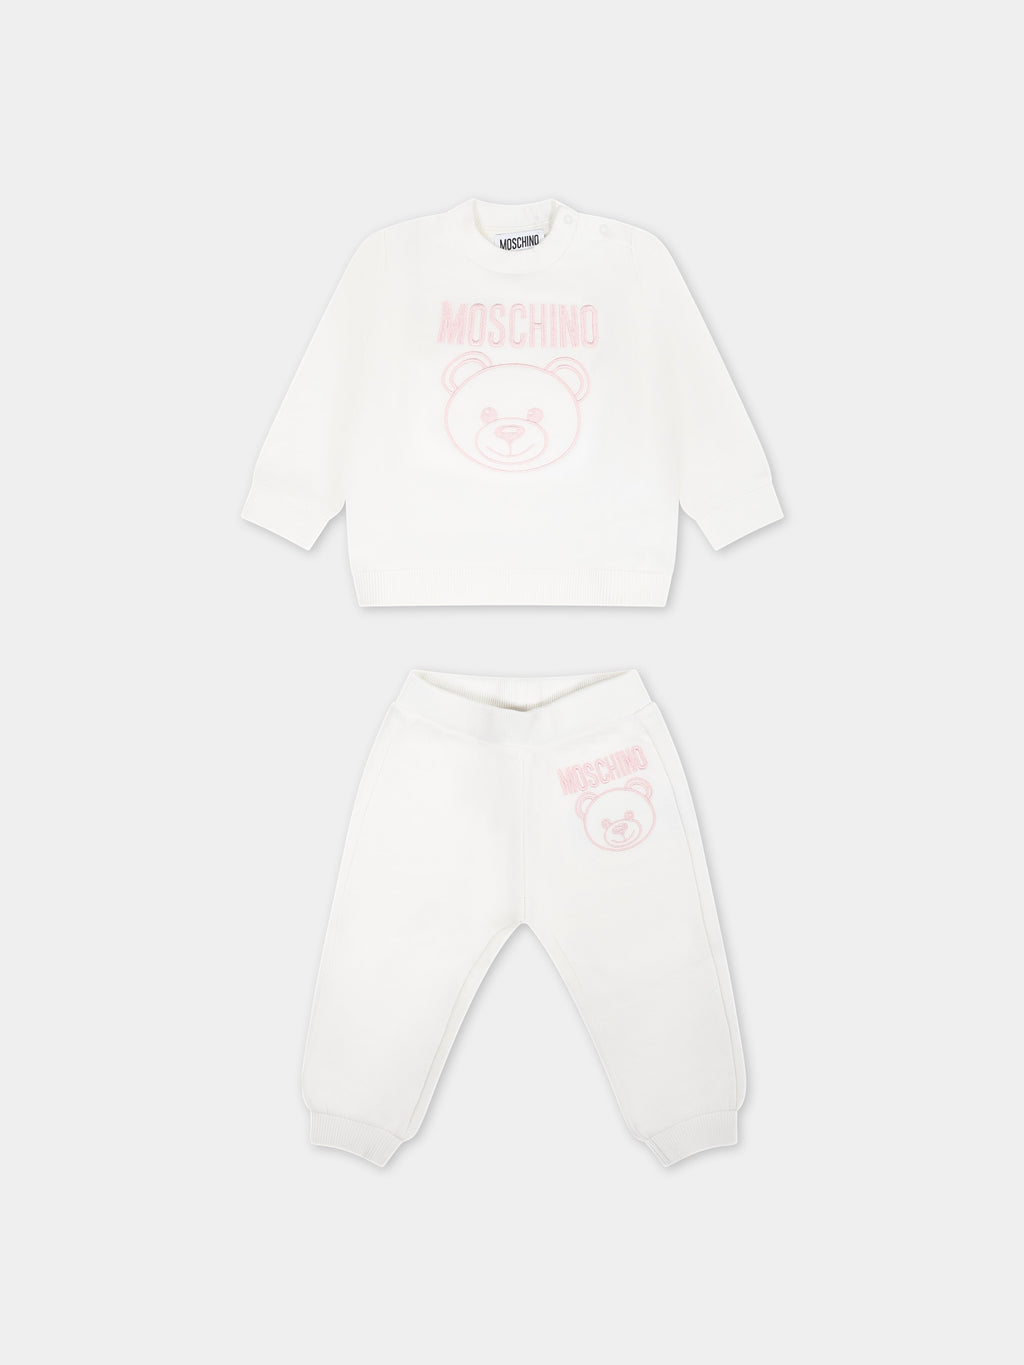 Tenue blanche pour bébé fille avec Teddy Bear et logo